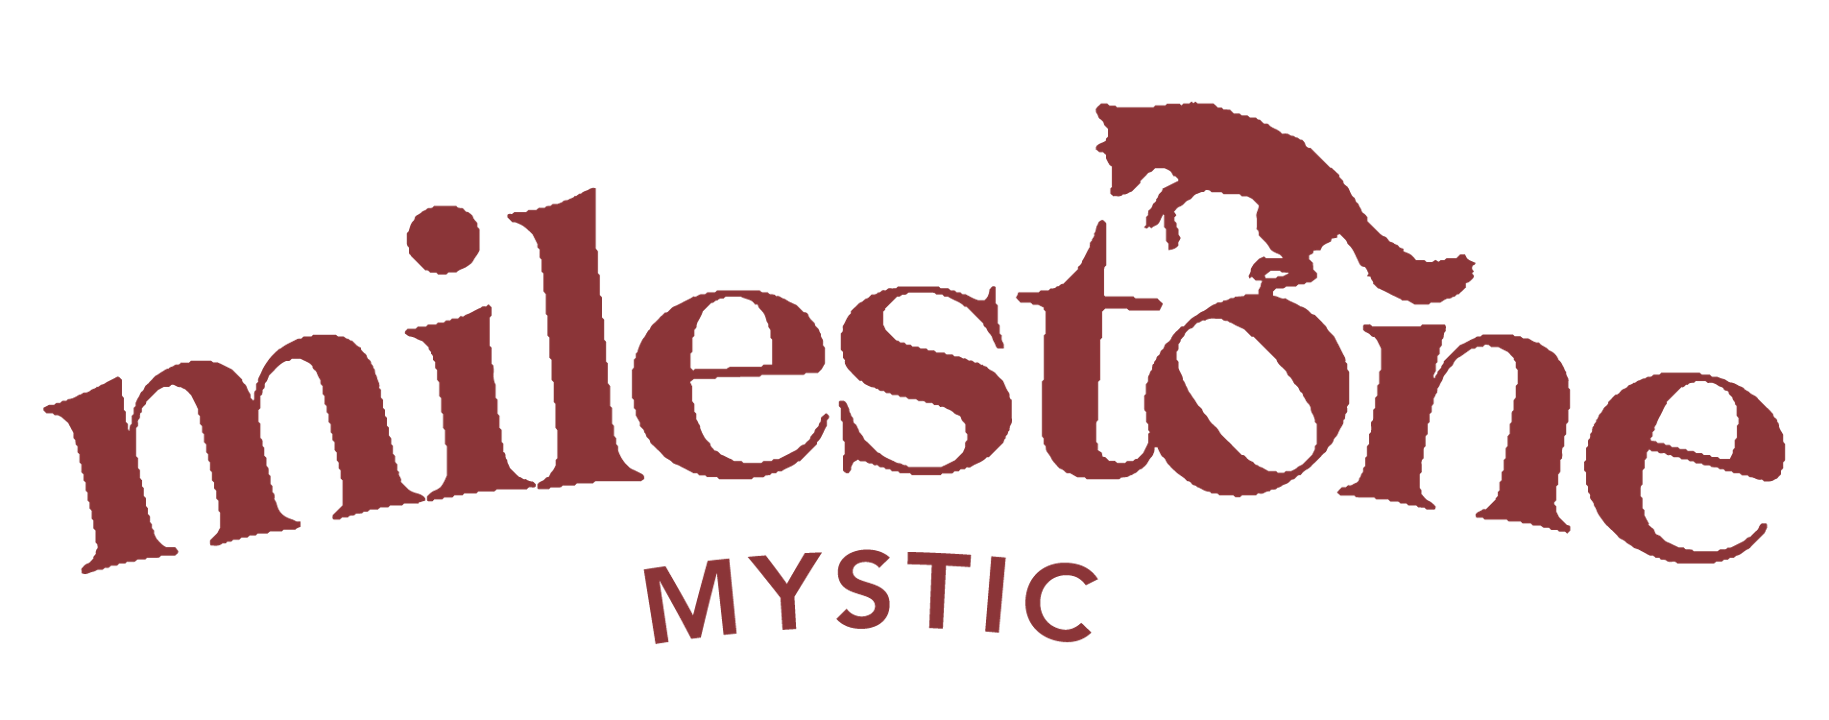 Milestone - Mystic Mystic